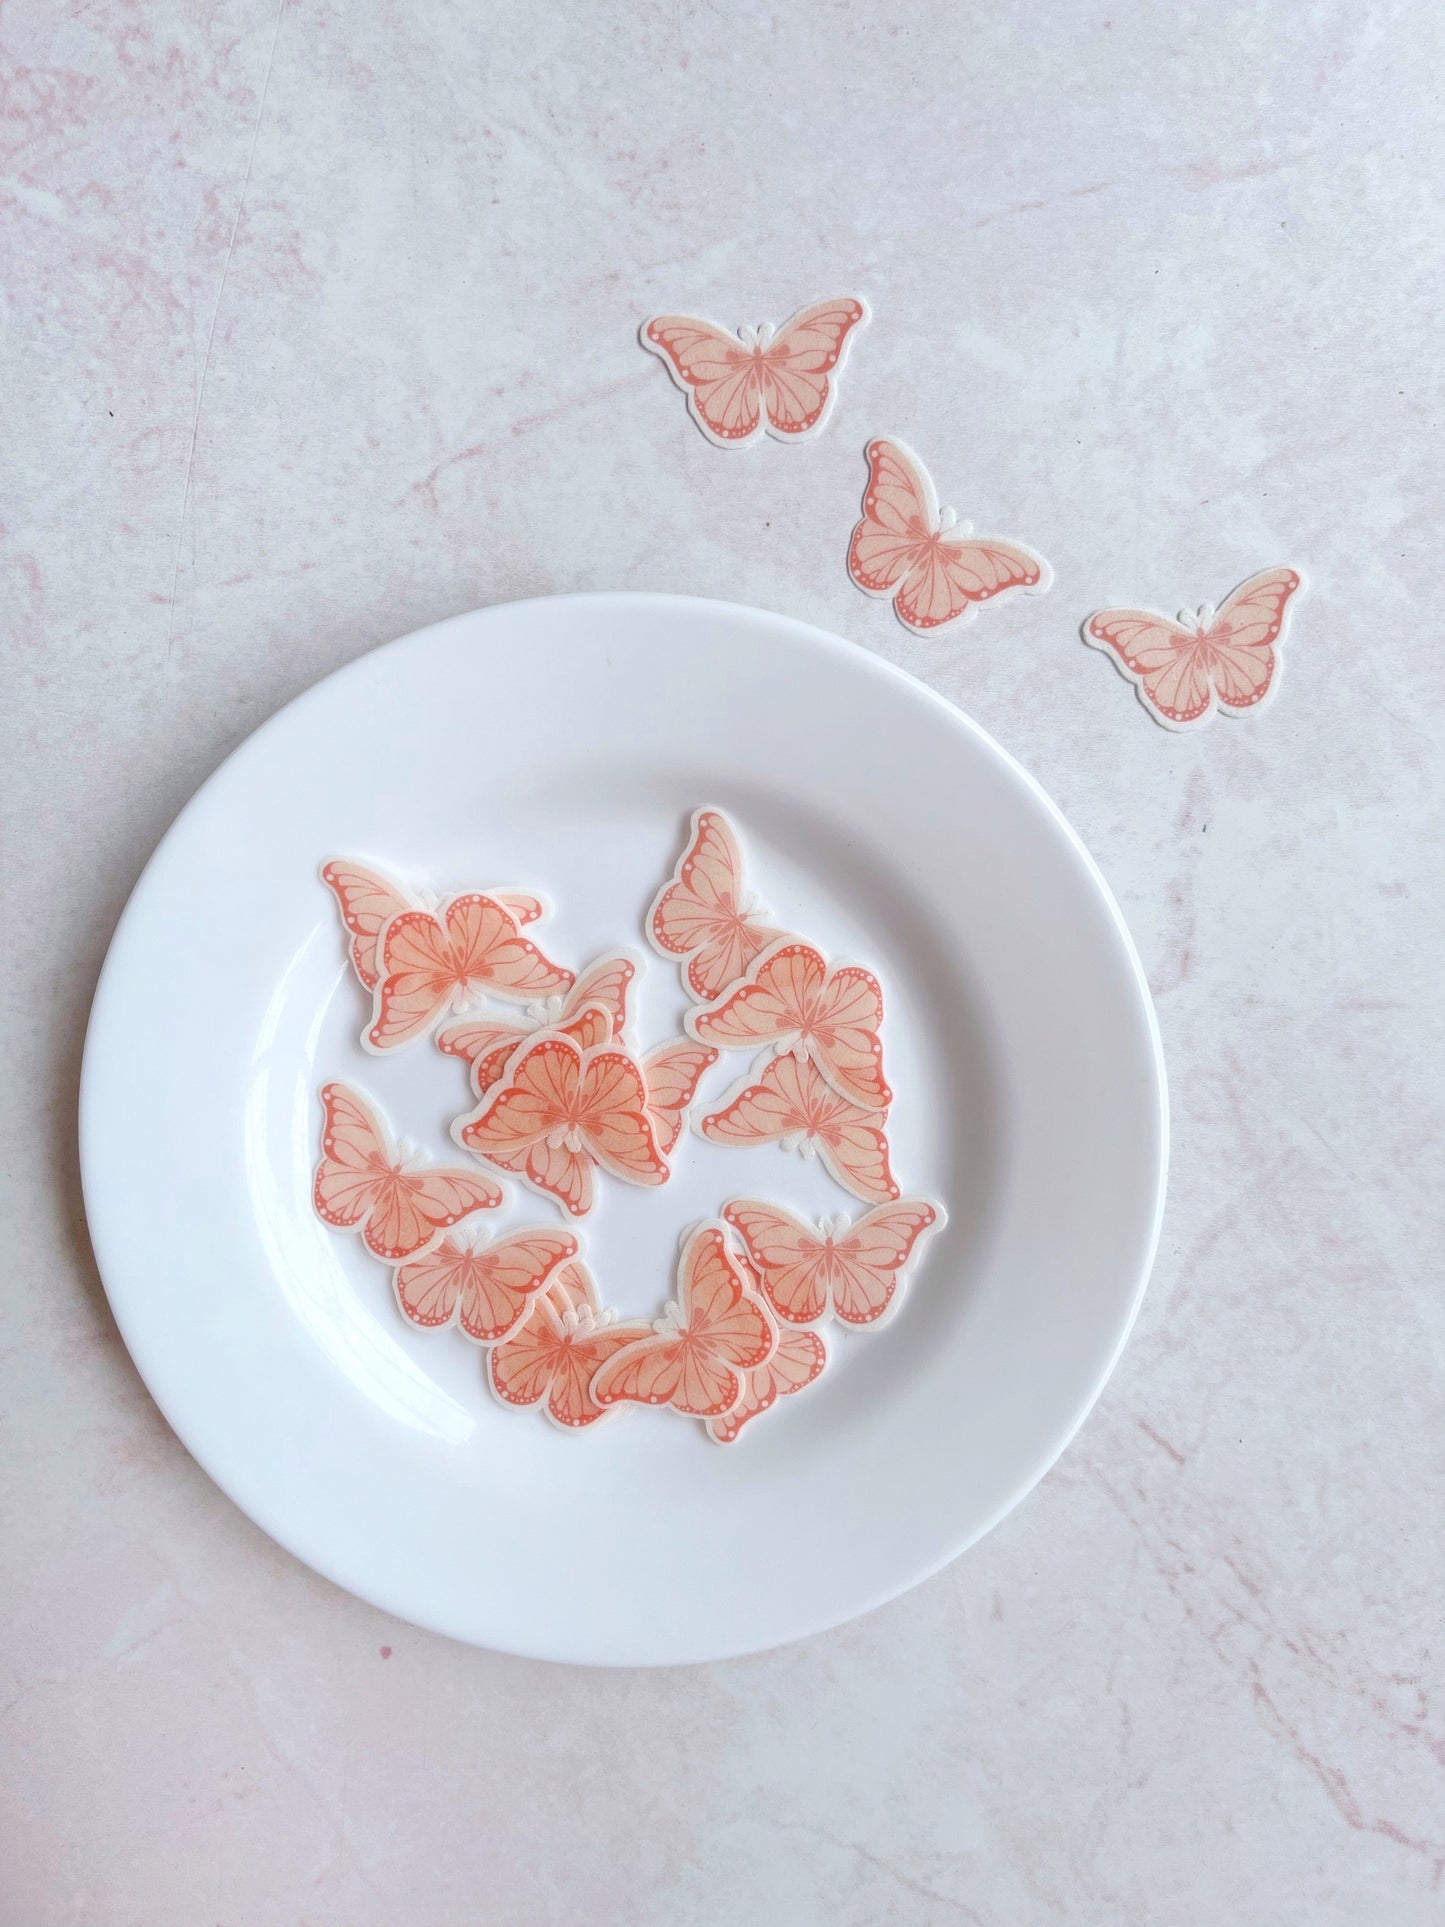 Mariposas rosadas con detalles